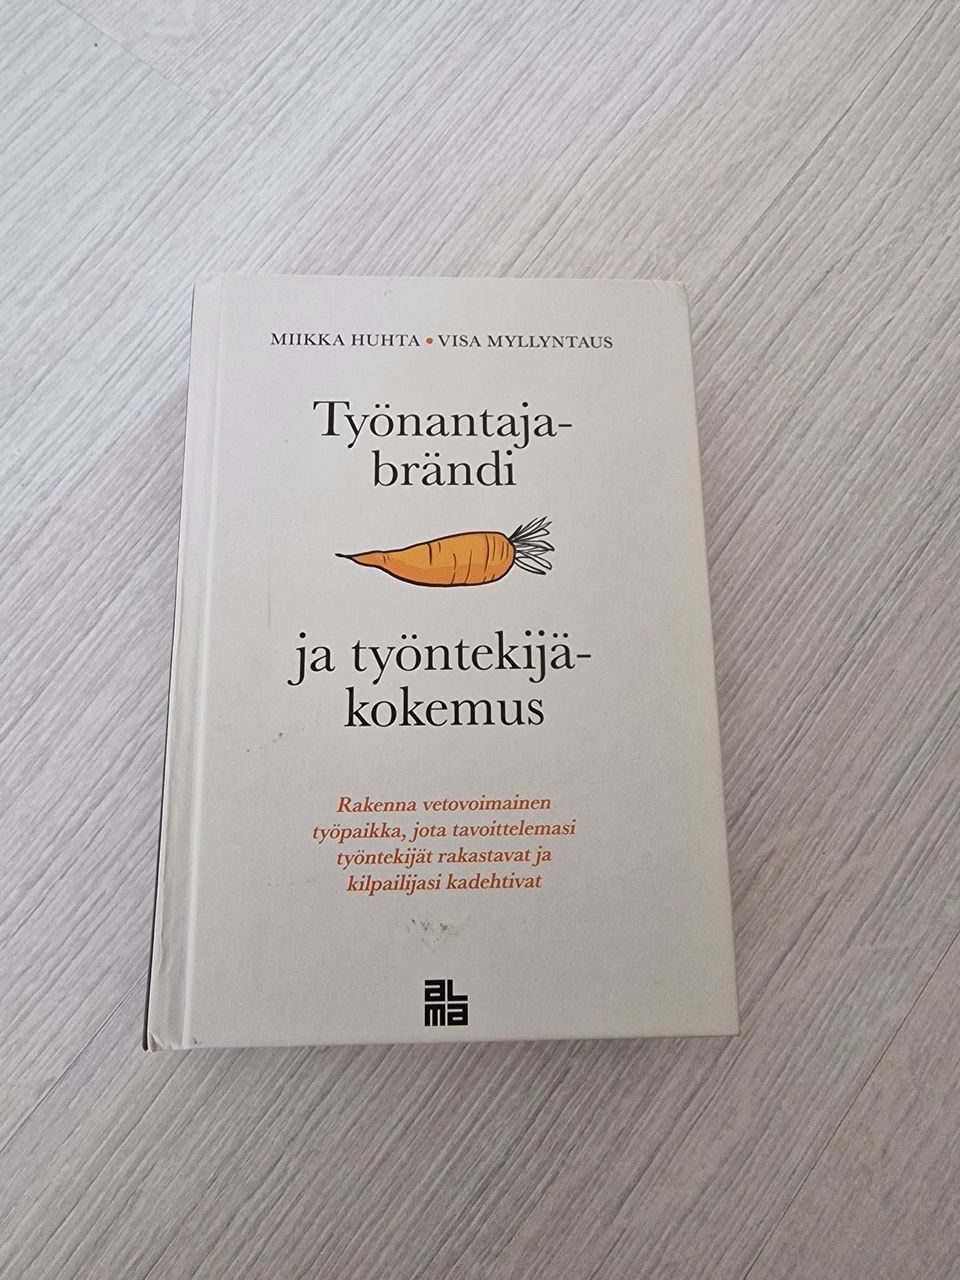 Työnantajabrändi ja työntekijäkokemus -kirja, Miikka Huhta & Visa Myllyntaus